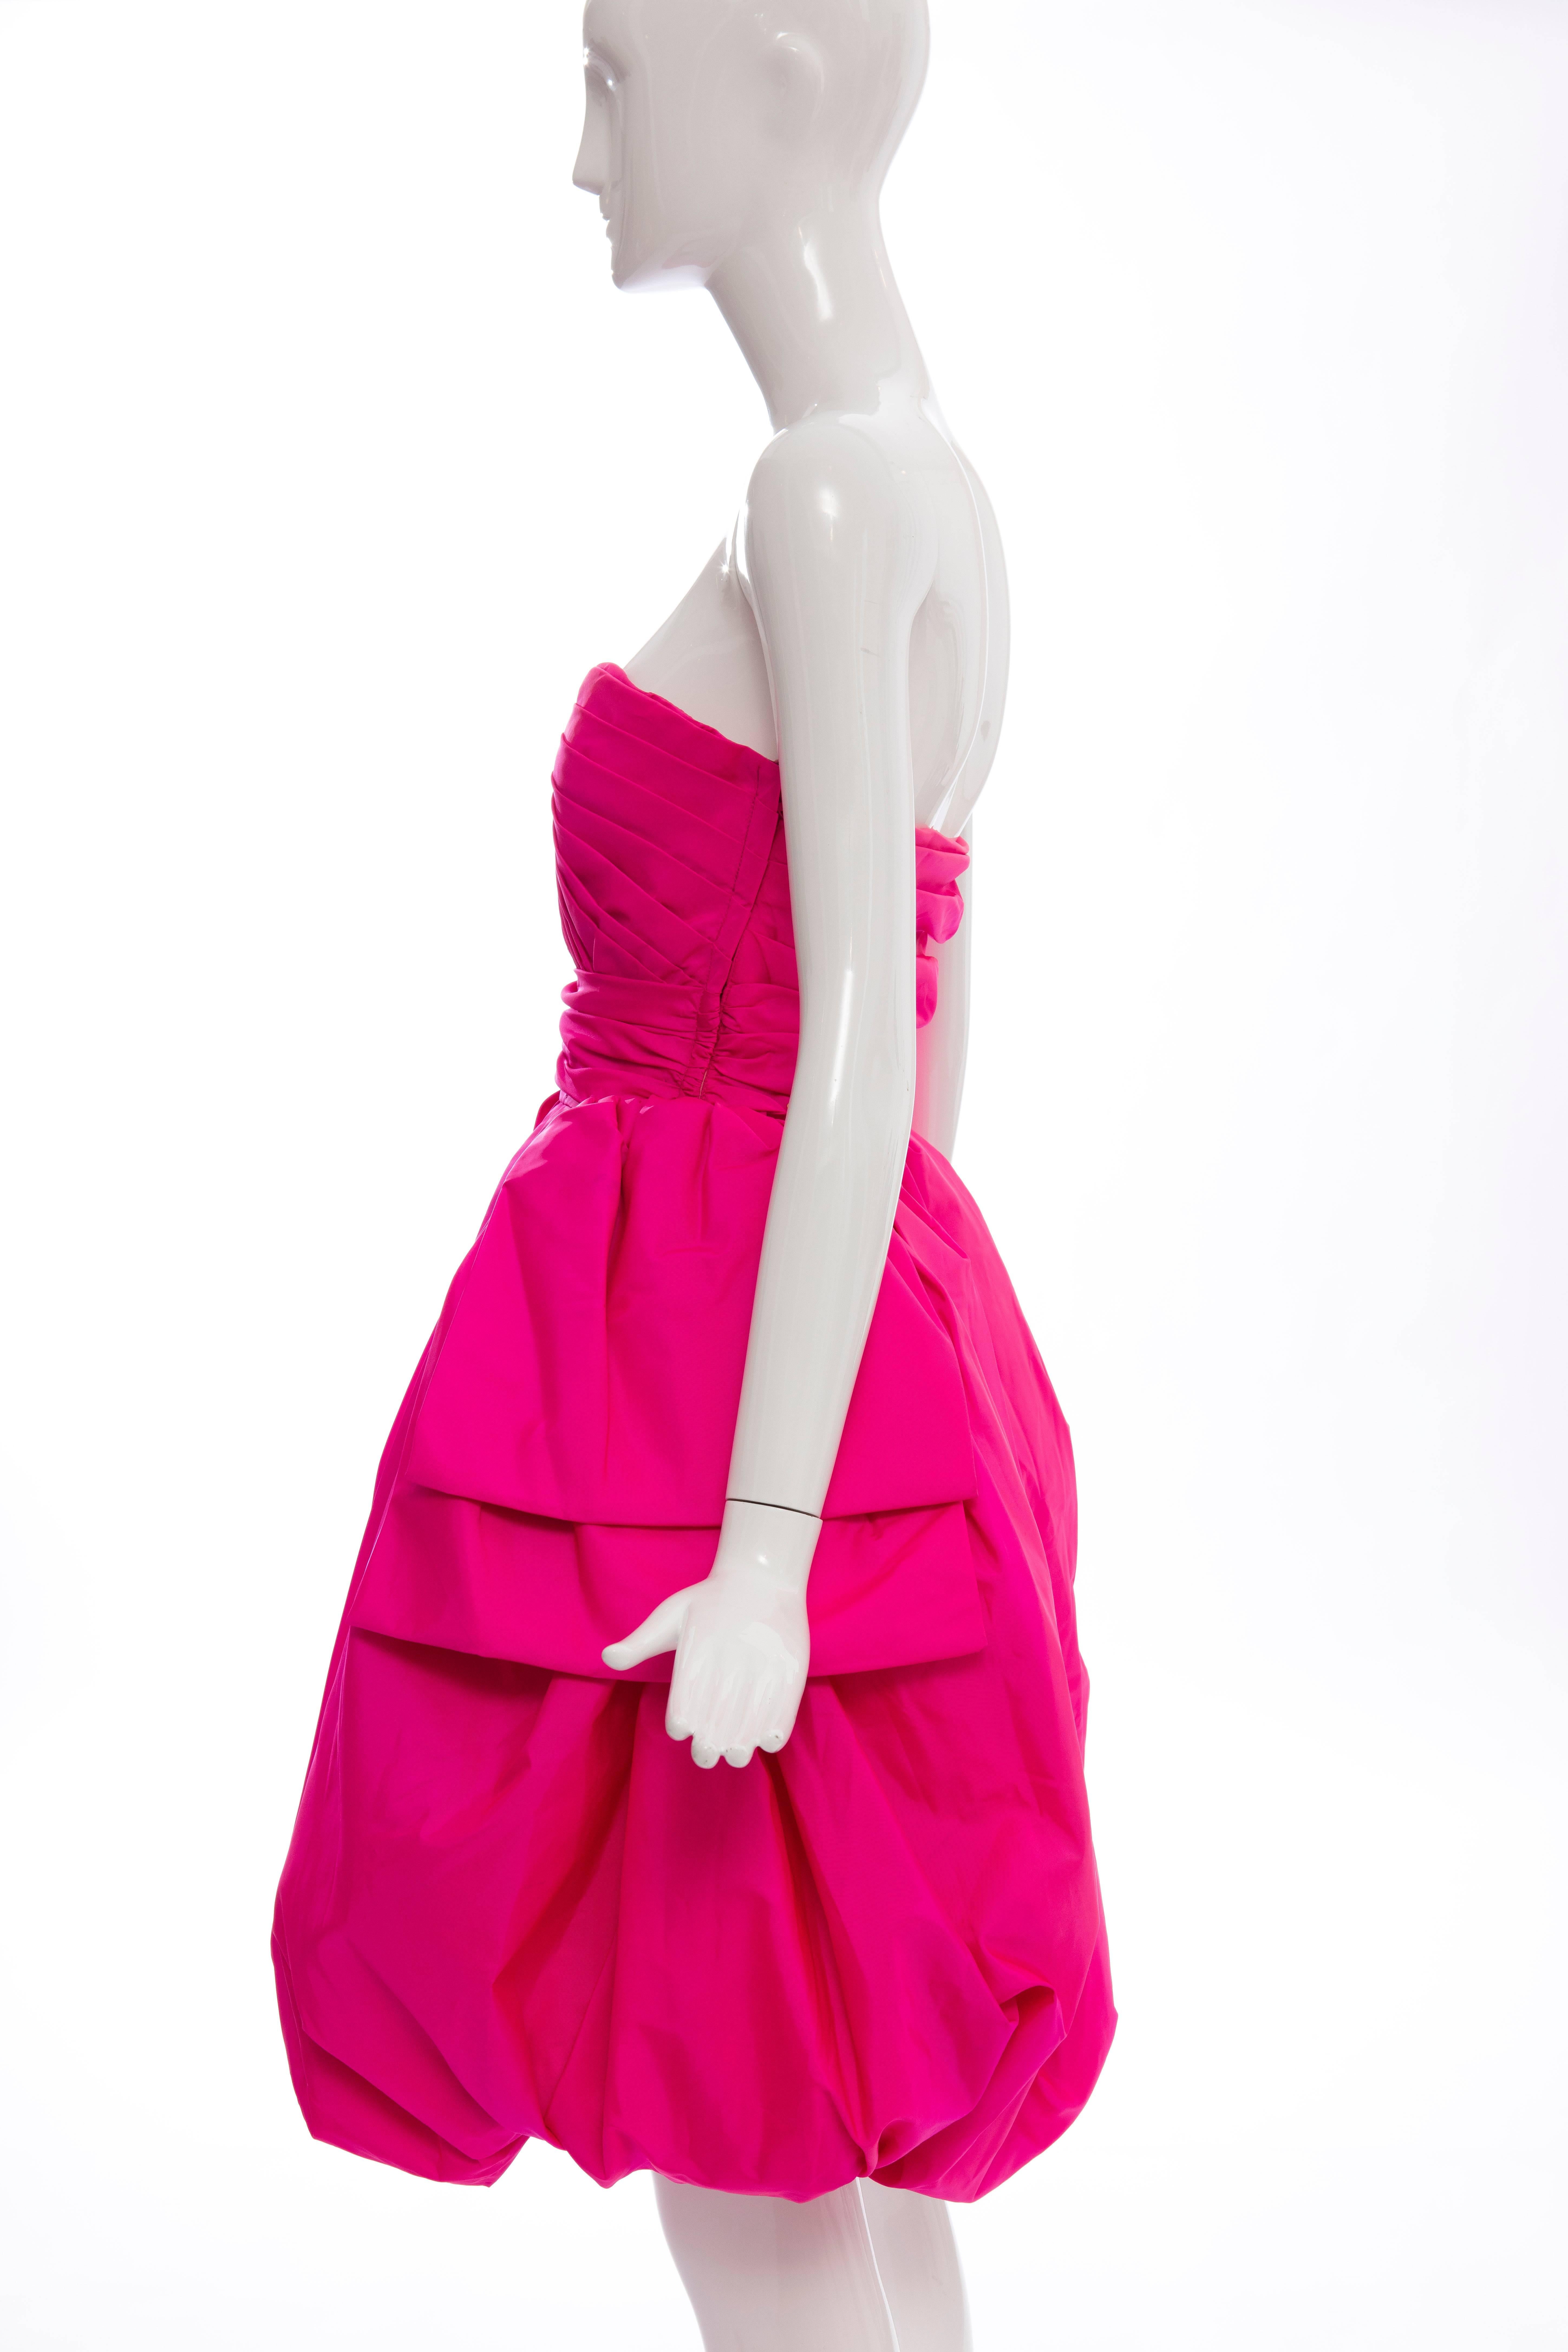 Victor Costa Fluorescent Pink Strapless Taffeta Bubble Party Dress, Circa 1980's 3